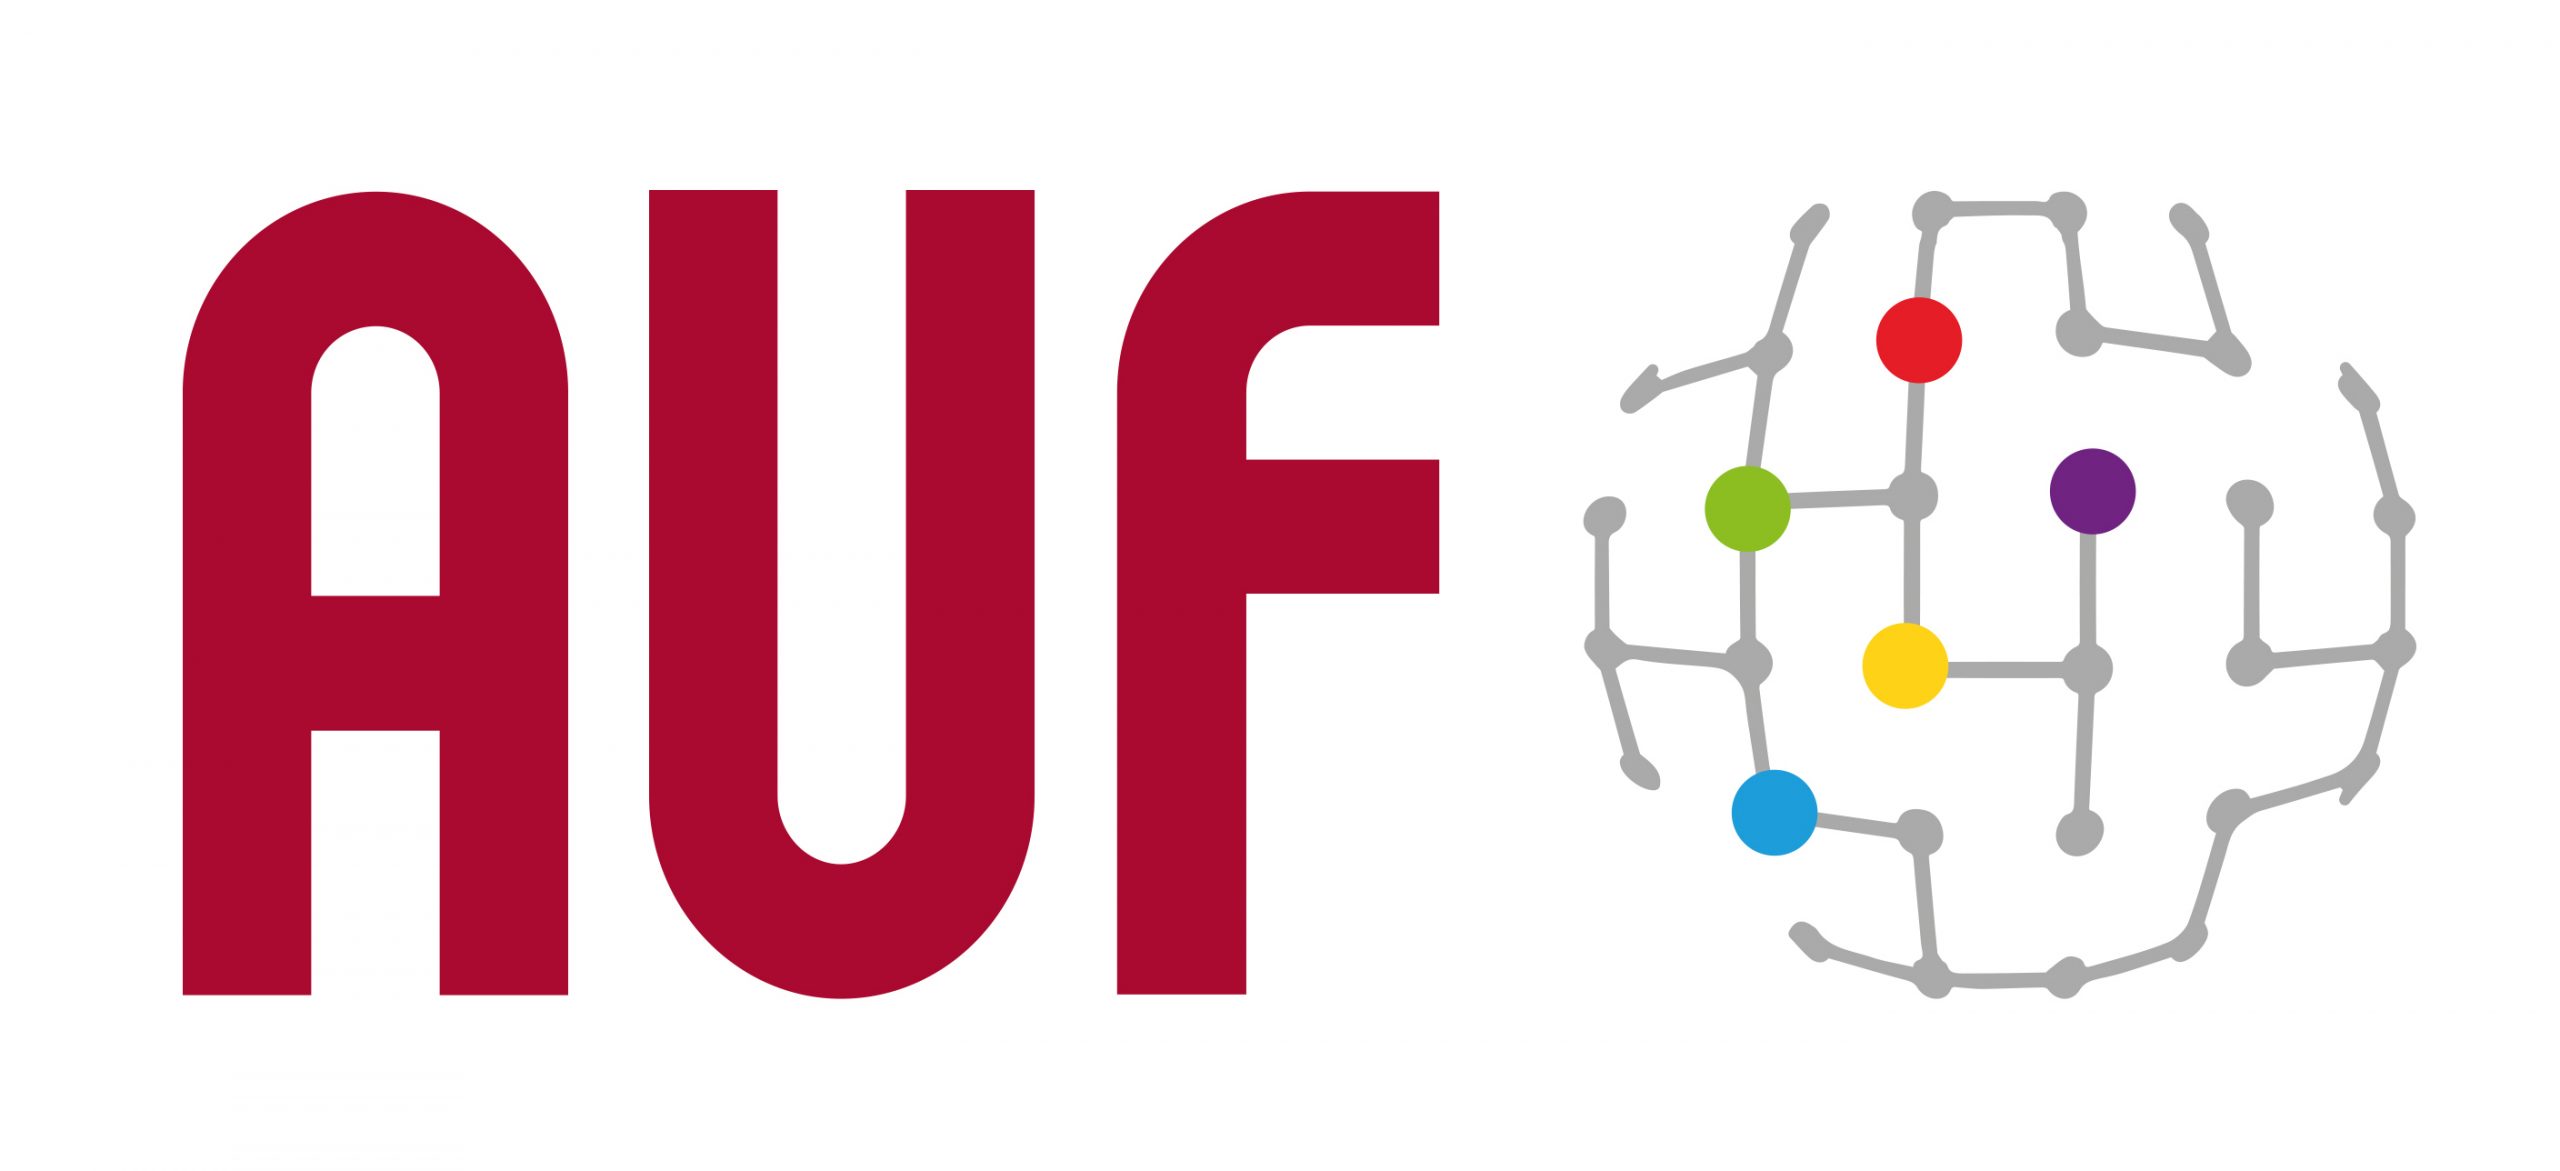 L’Agence universitaire de la Francophonie (AUF) renforce sa présence en République démocratique du Congo